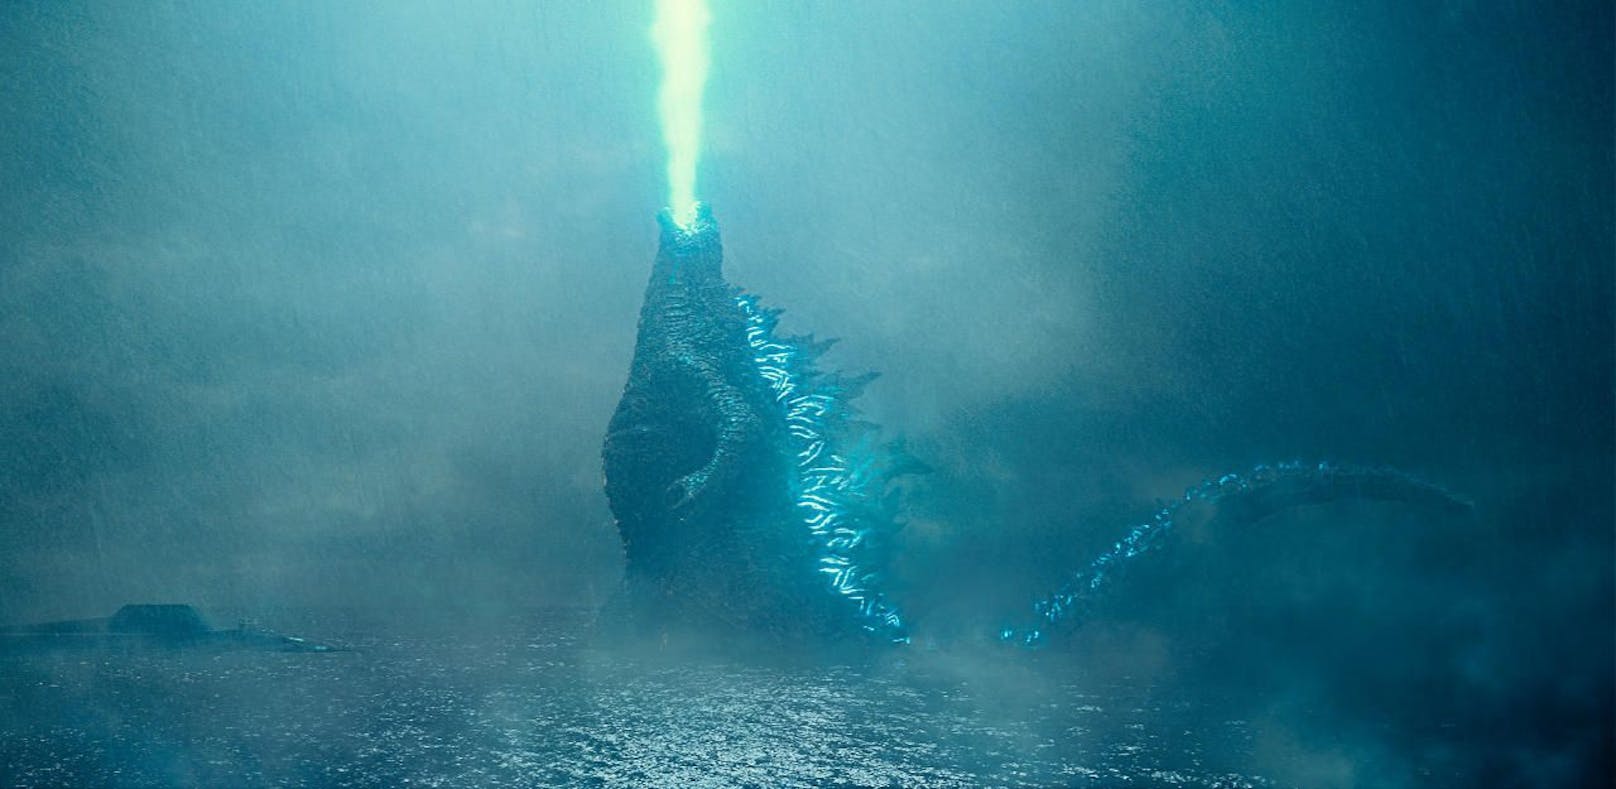 Epische Monster-Schlacht im neuen "Godzilla"-Trailer